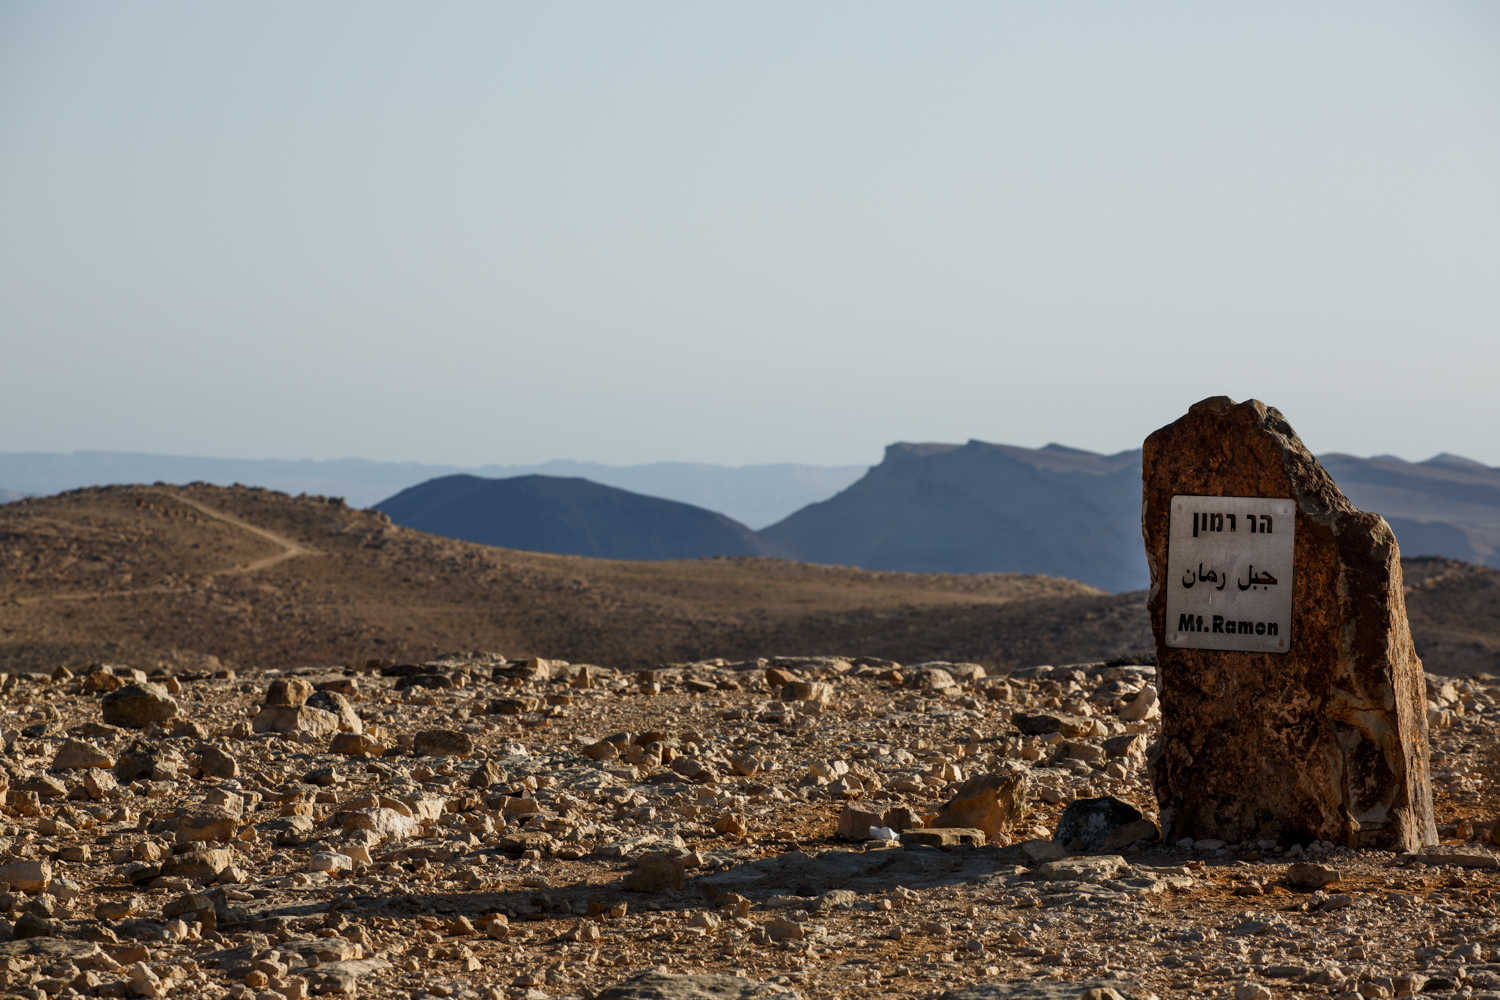 Ramon hegy, 1037 méterrel a tenger szintje felett, a Negev sivatag legmagasabb pontja